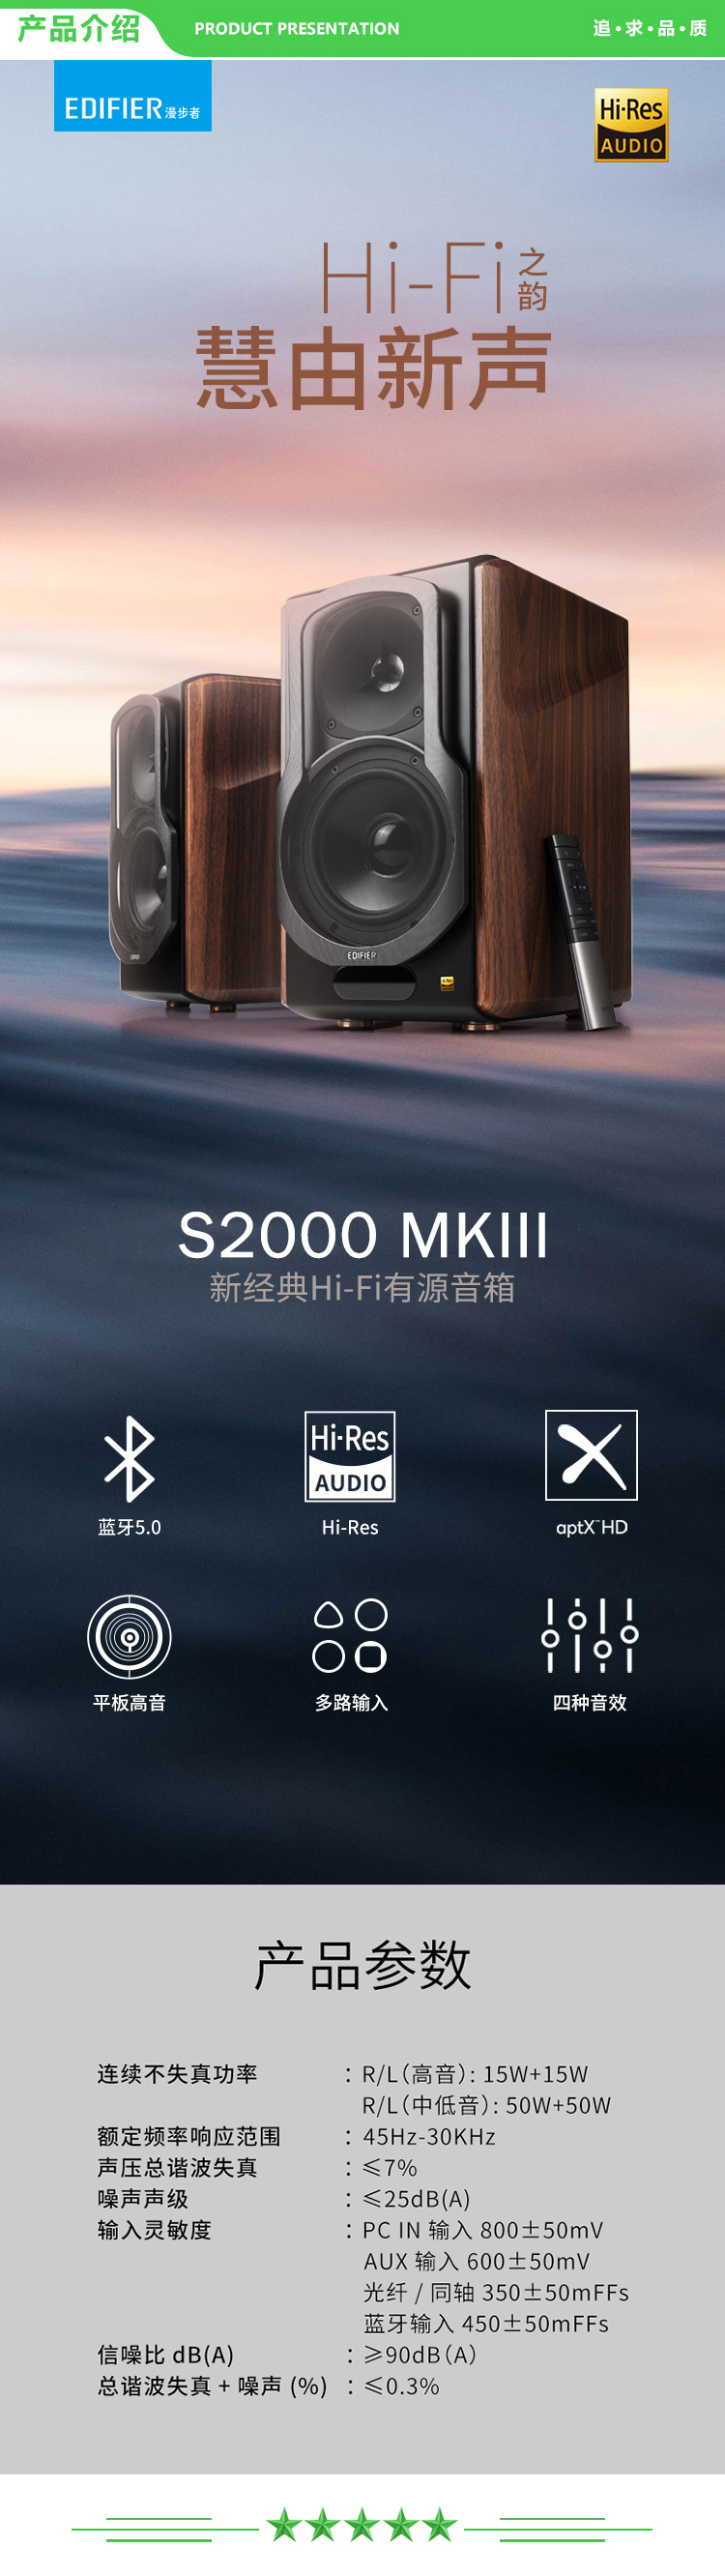 漫步者 EDIFIER S2000MKIII 划时代新经典 HIFI级2.0有源音箱 蓝牙5.0音箱 电脑音箱 电视音响 .jpg